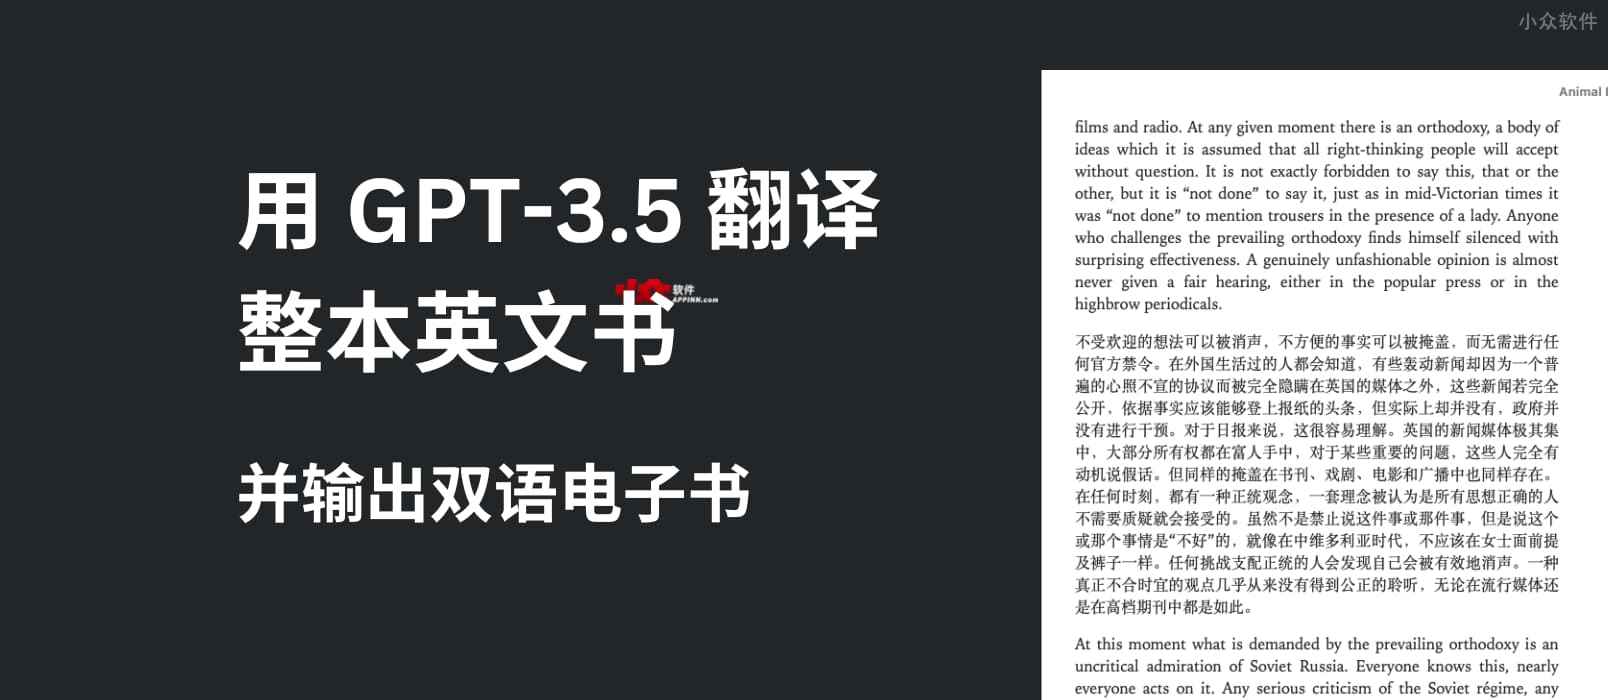 用 GPT-3.5 翻译整本英文书，输出中英双语电子书